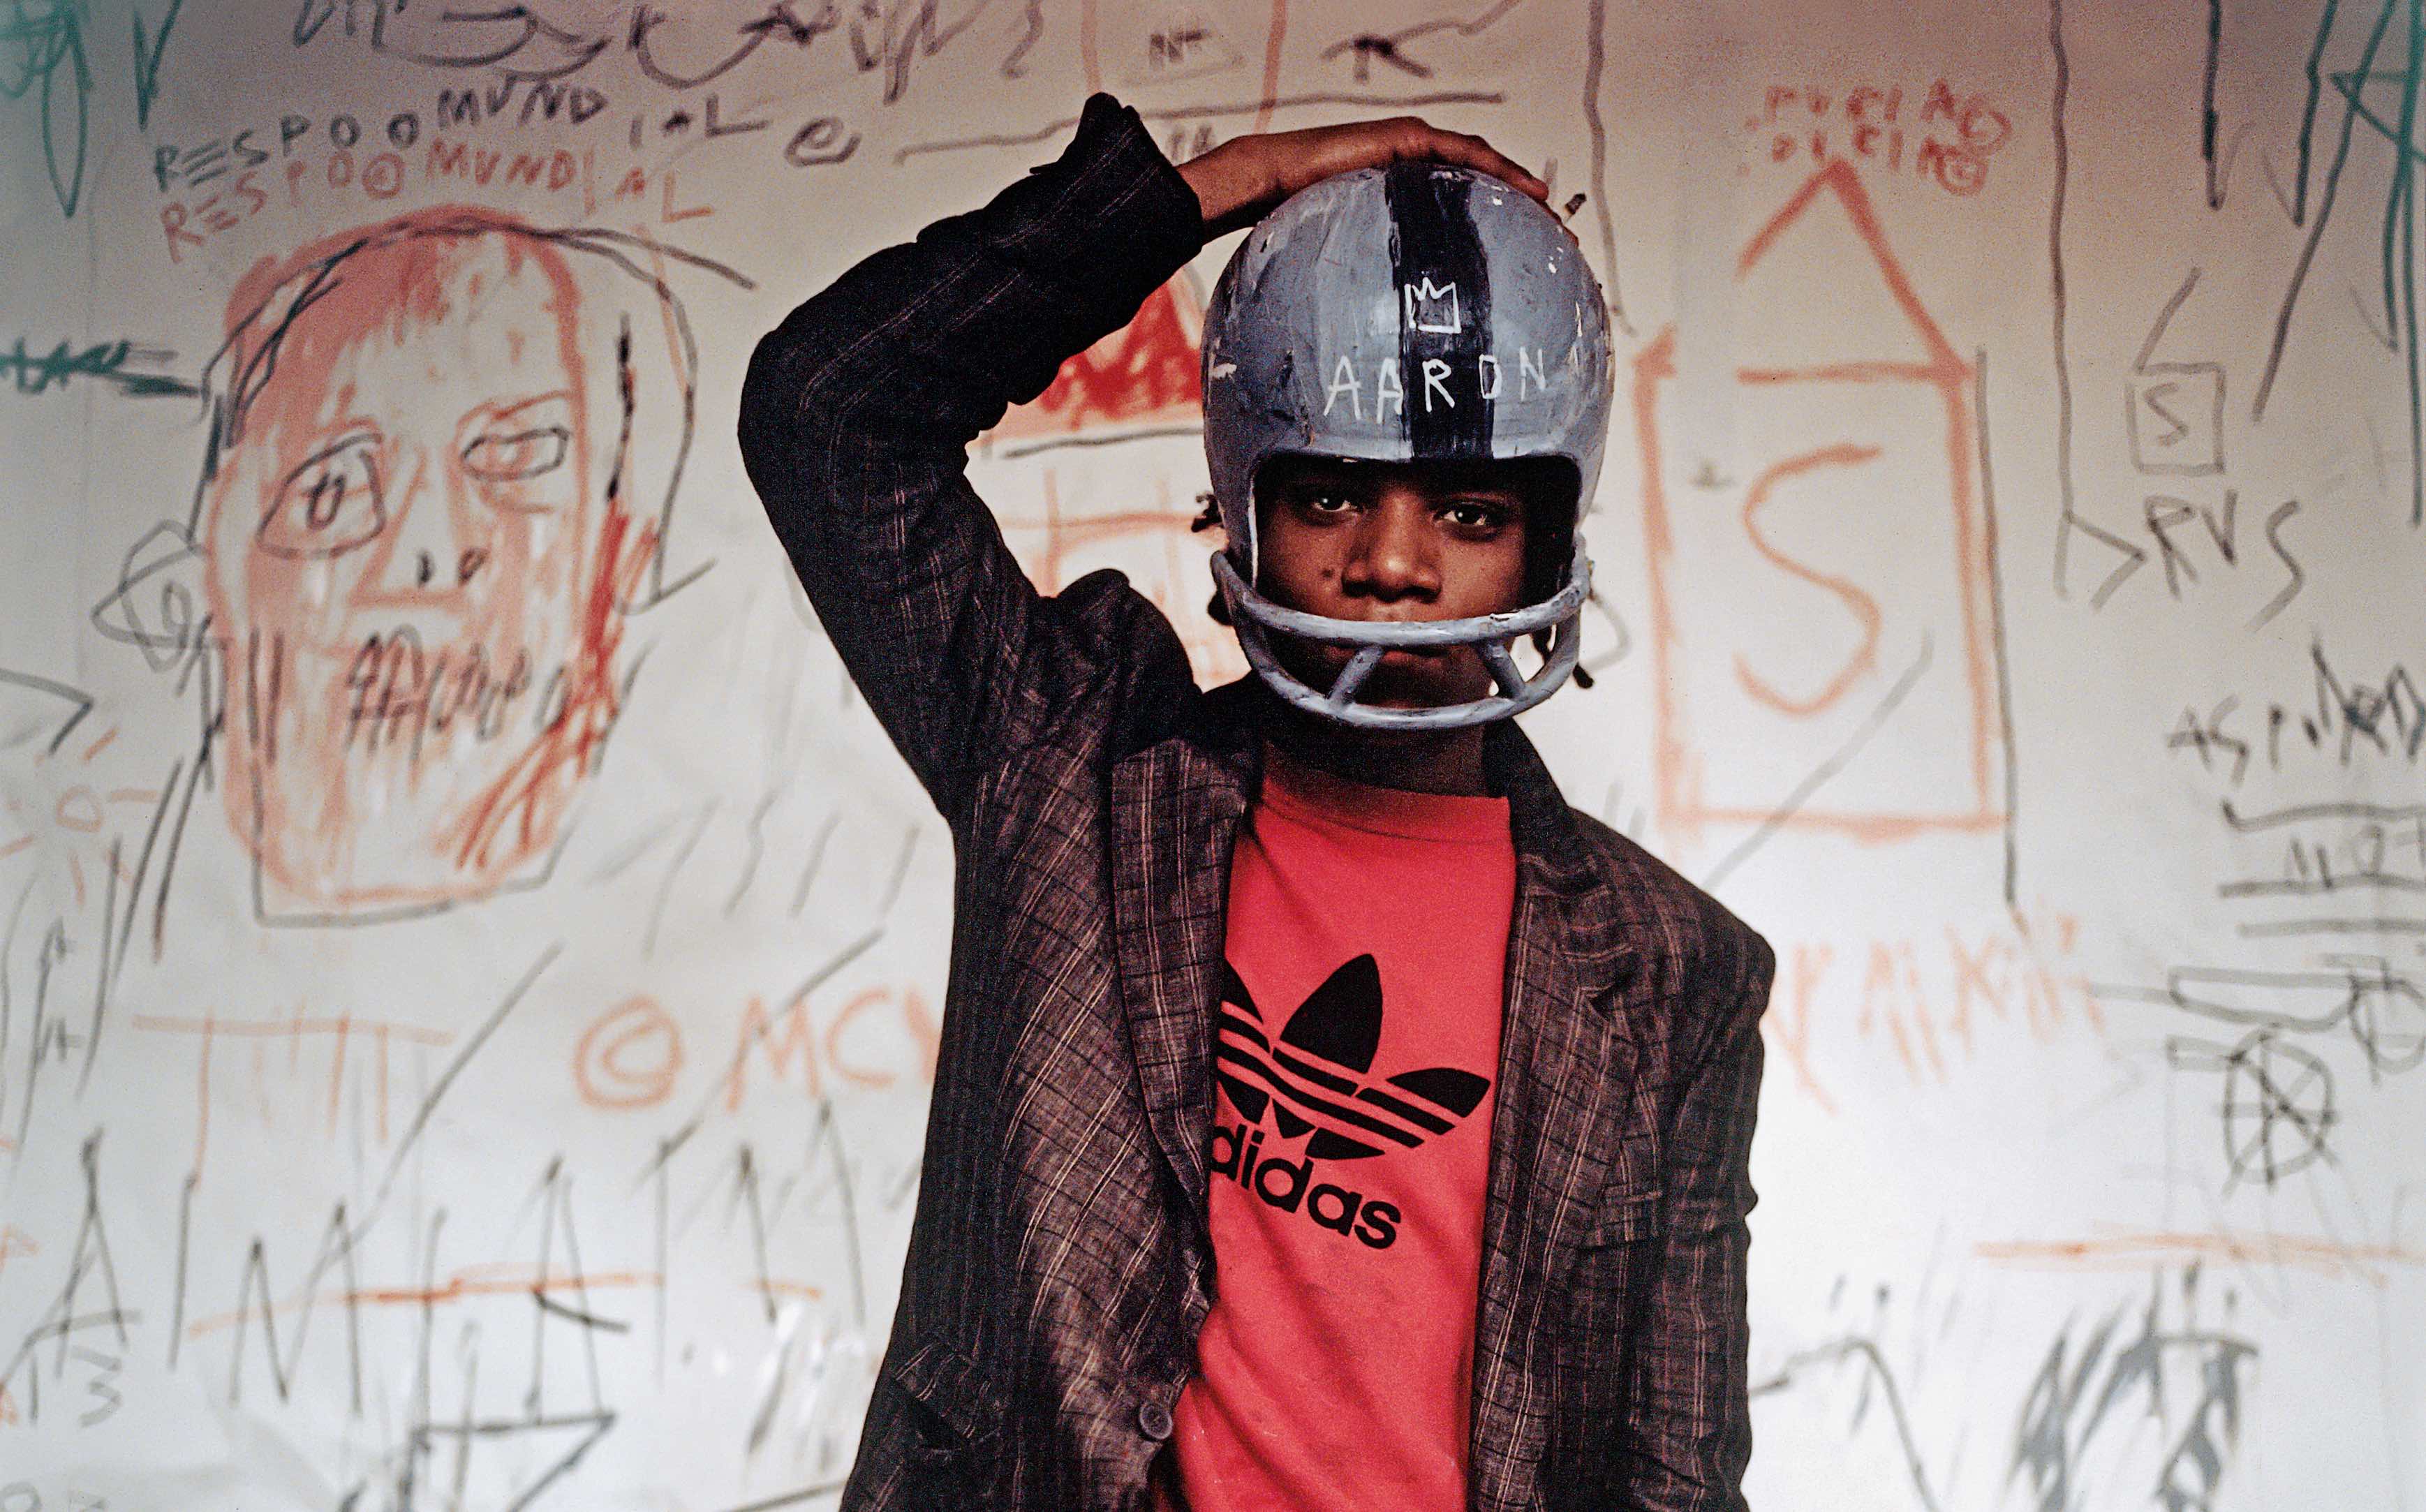 Helm statt Krone: Jean-Michel Basquiat 1981, kurz bevor er zum Superstar der Kunst avancierte